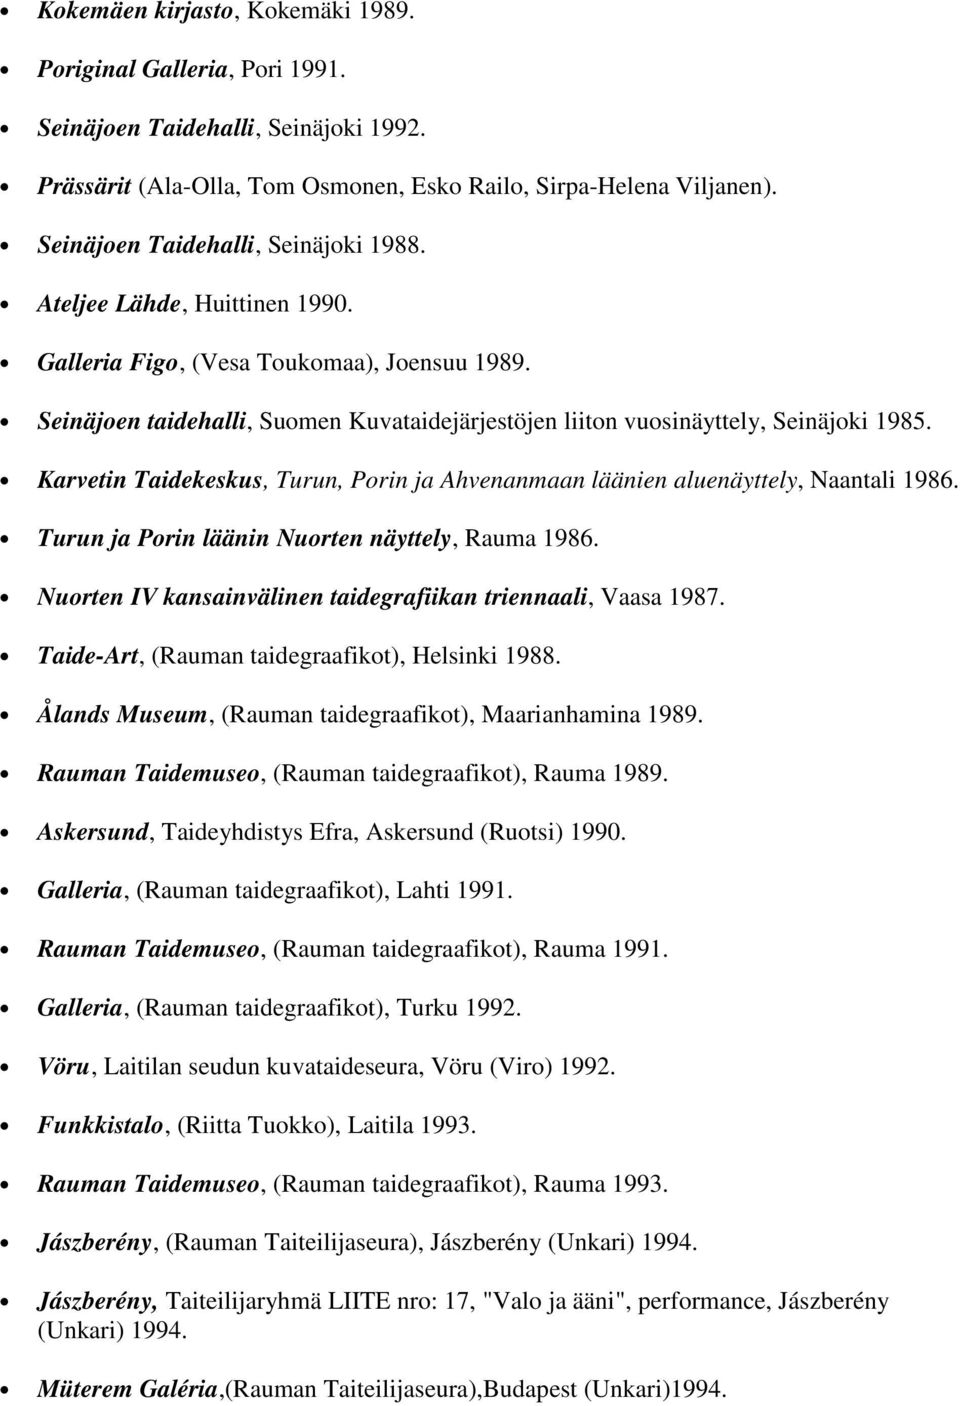 Seinäjoen taidehalli, Suomen Kuvataidejärjestöjen liiton vuosinäyttely, Seinäjoki 1985. Karvetin Taidekeskus, Turun, Porin ja Ahvenanmaan läänien aluenäyttely, Naantali 1986.